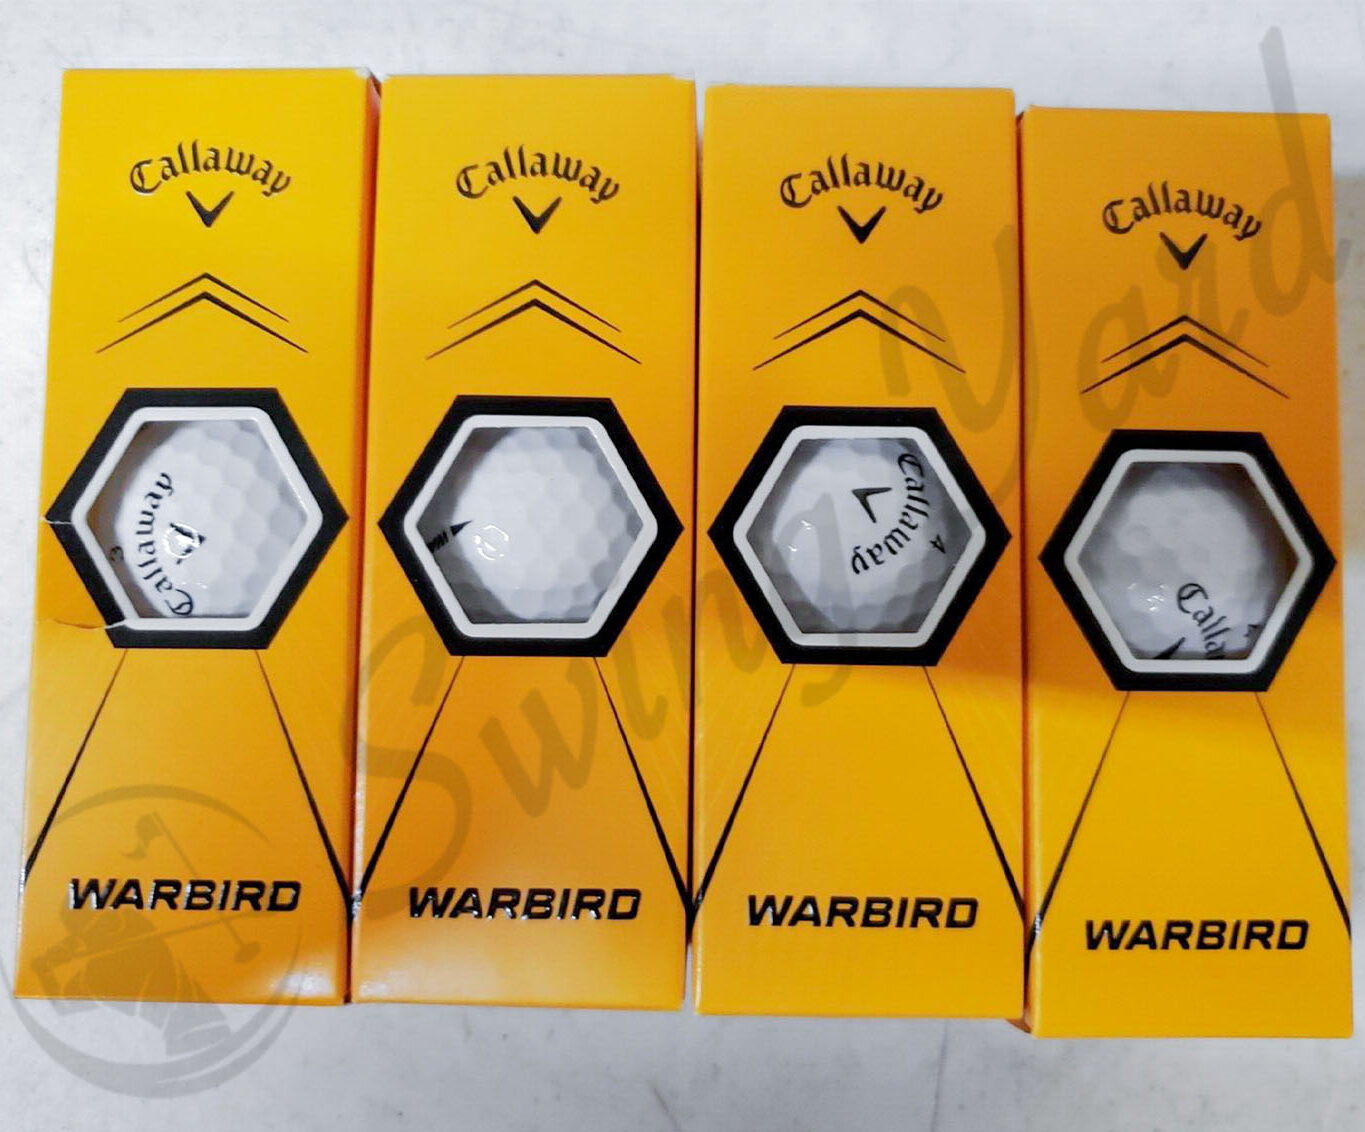 A Callaway Warbird golf balls package at the range